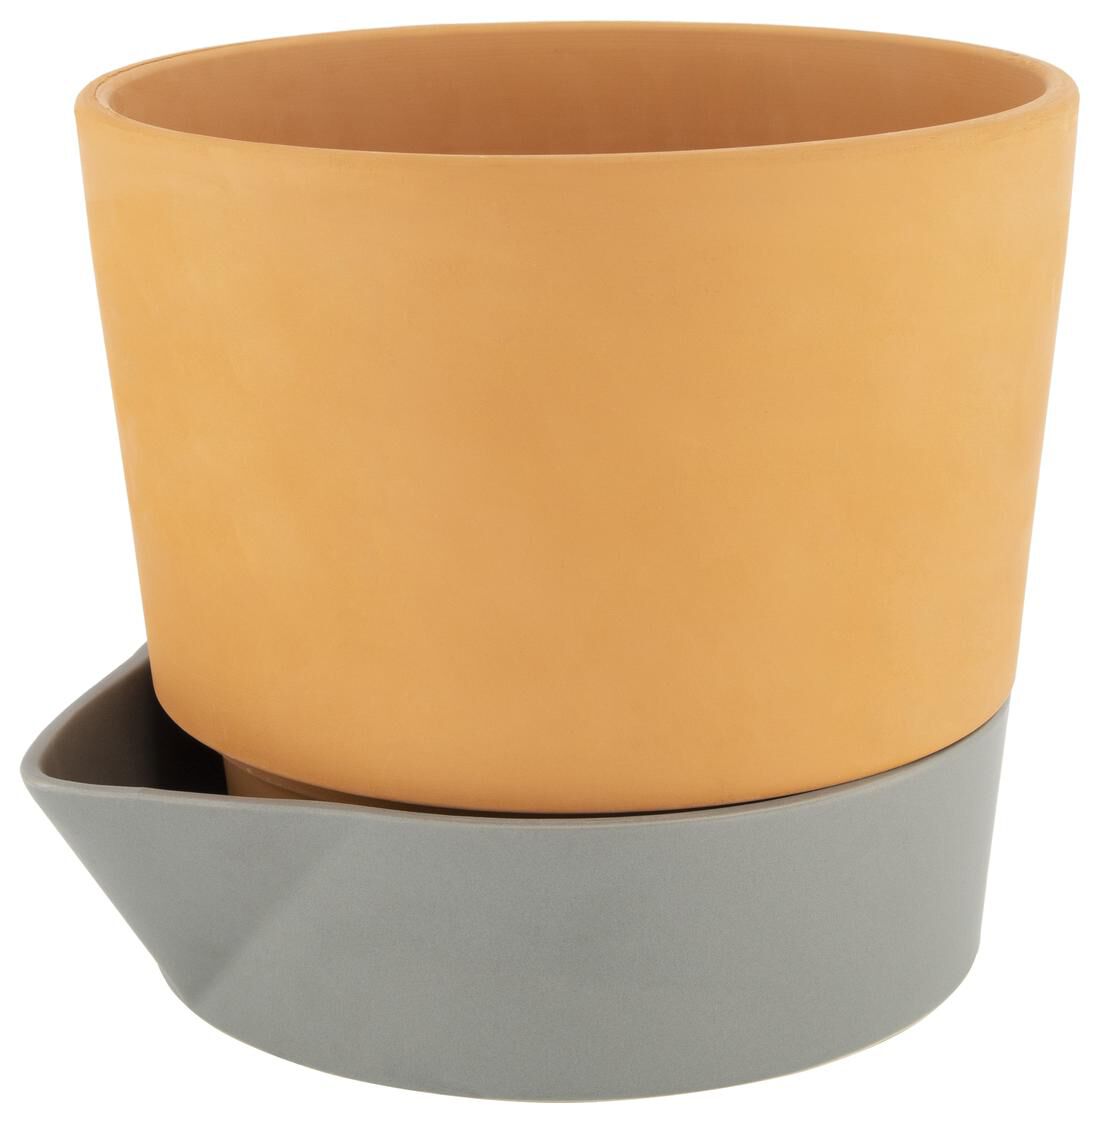 terracotta pots absorb water